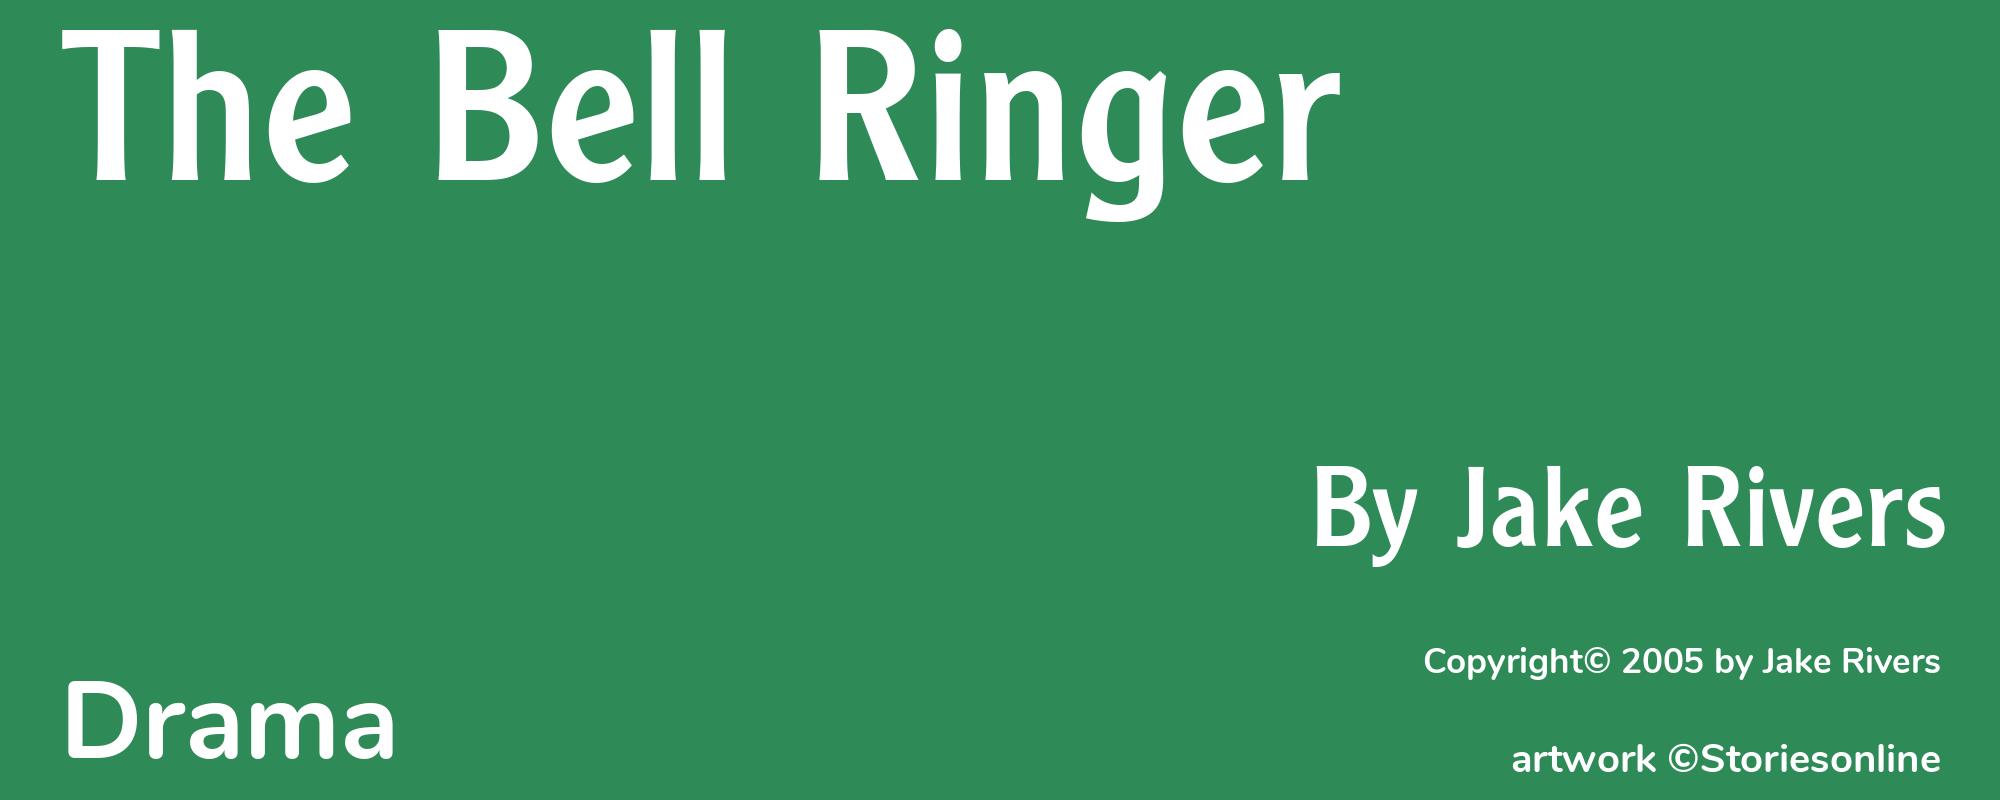 The Bell Ringer - Cover